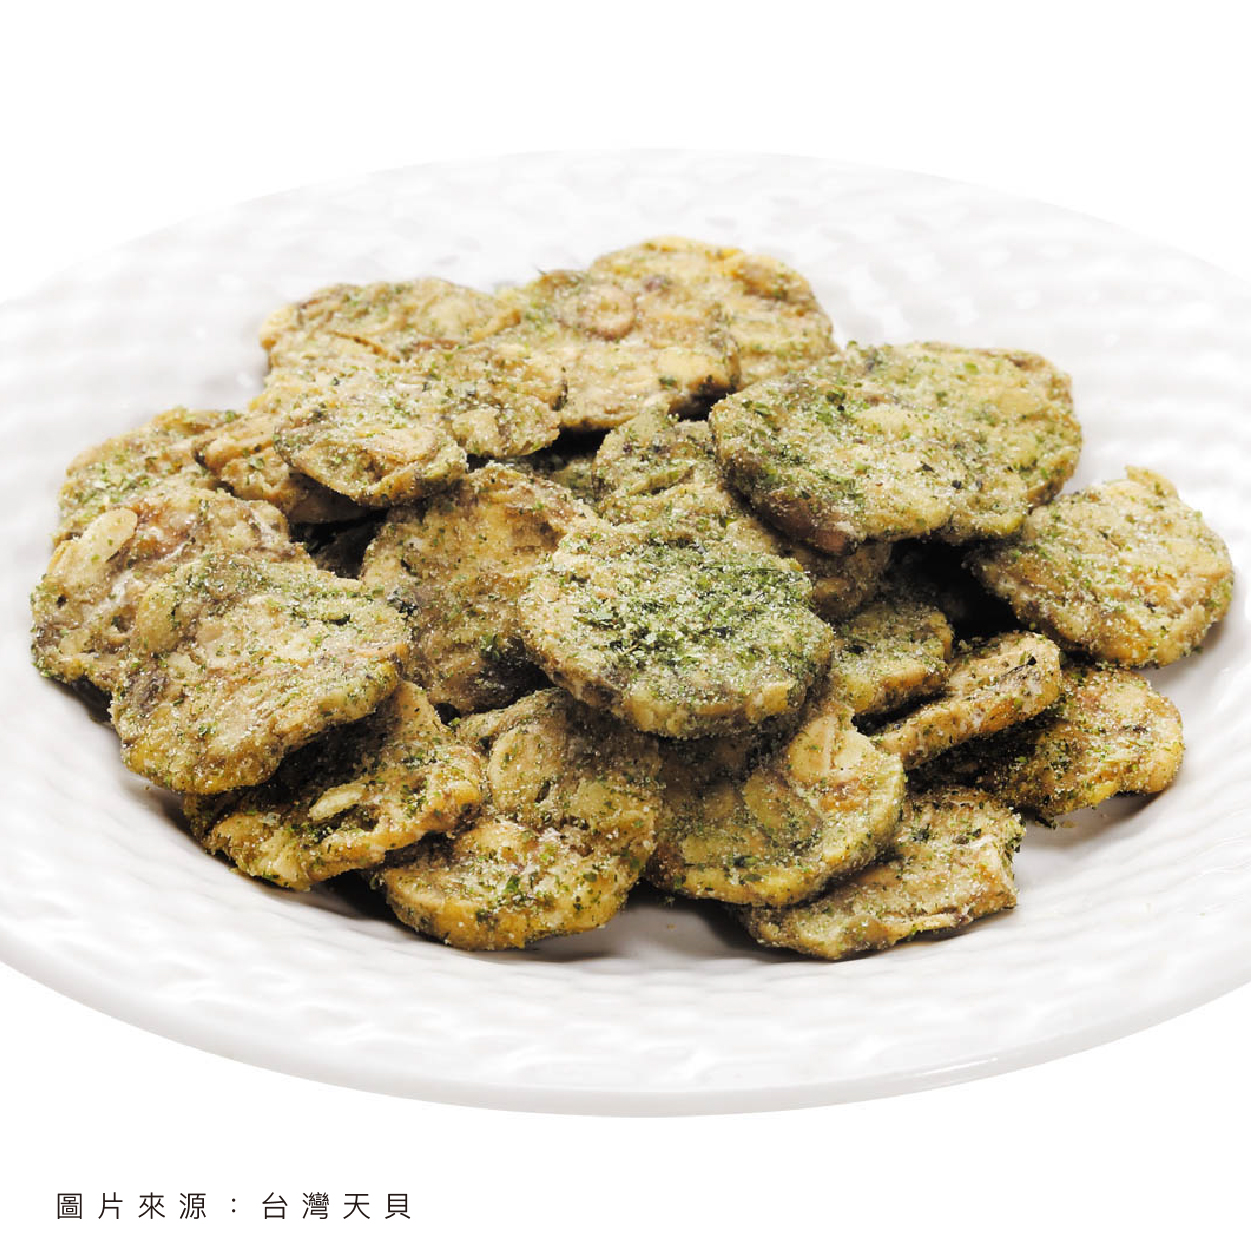 台灣天貝 天貝益菌脆餅 黑胡椒口味 吃零食也能兼顧健康和美味